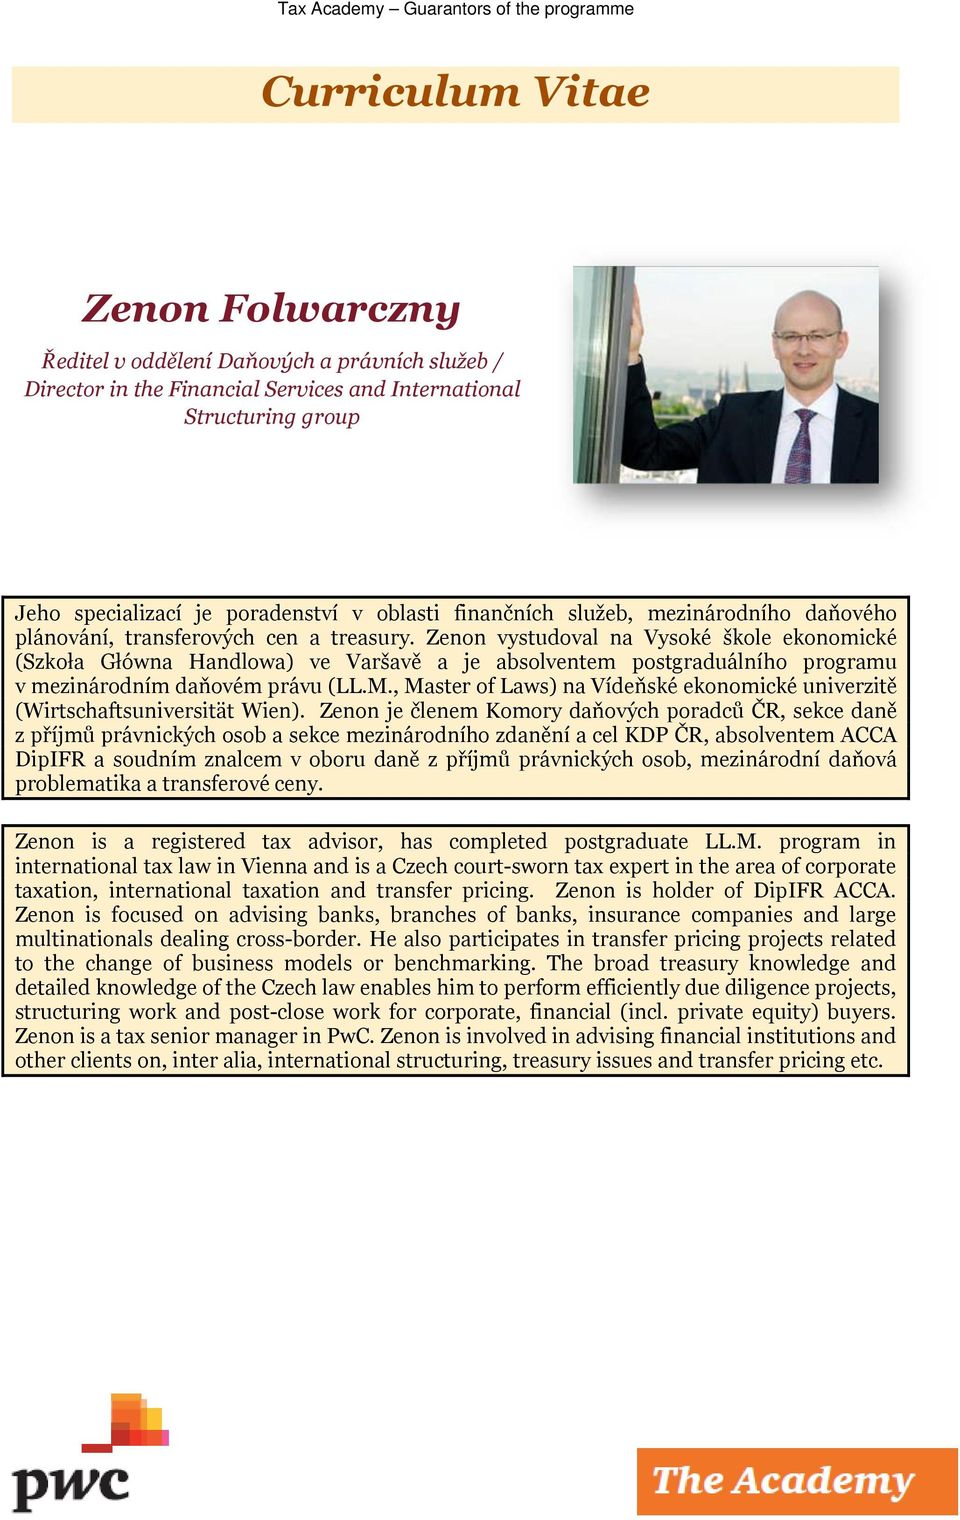 Zenon vystudoval na Vysoké škole ekonomické (Szkoła Główna Handlowa) ve Varšavě a je absolventem postgraduálního programu v mezinárodním daňovém právu (LL.M.